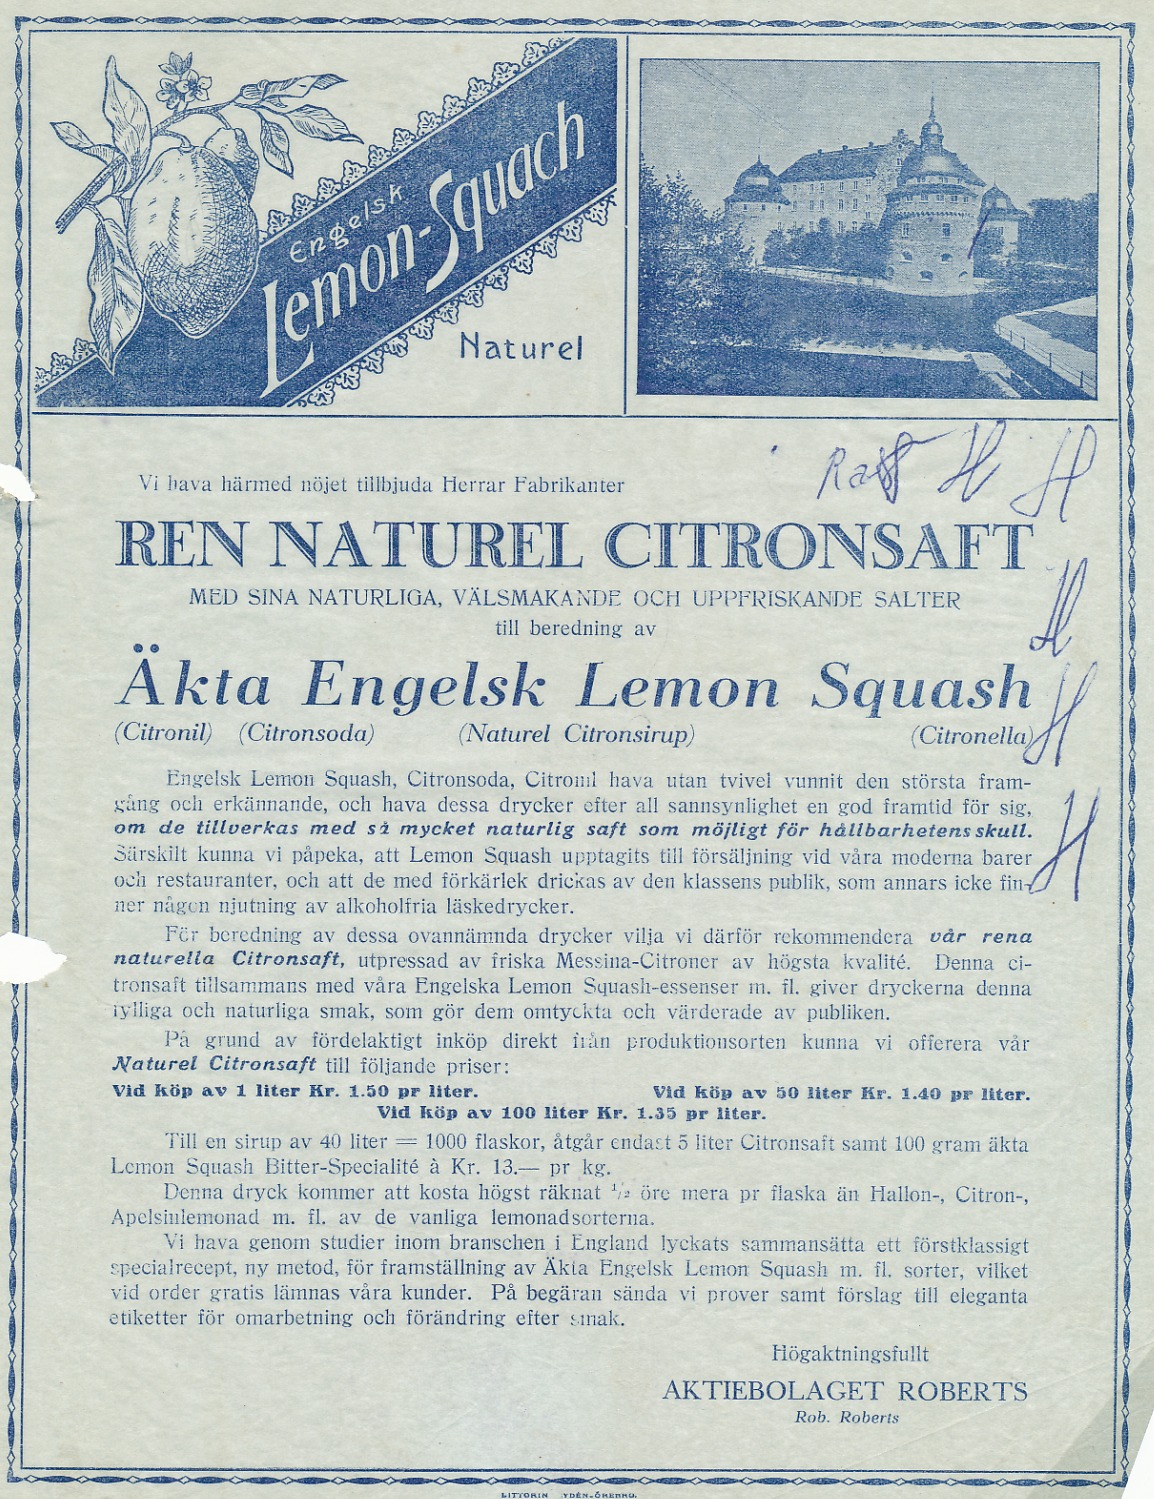 Här erbjuder Ab Roberts ren naturell citronsaft för tillverkning av Äkta Engelsk Lemon Squash.